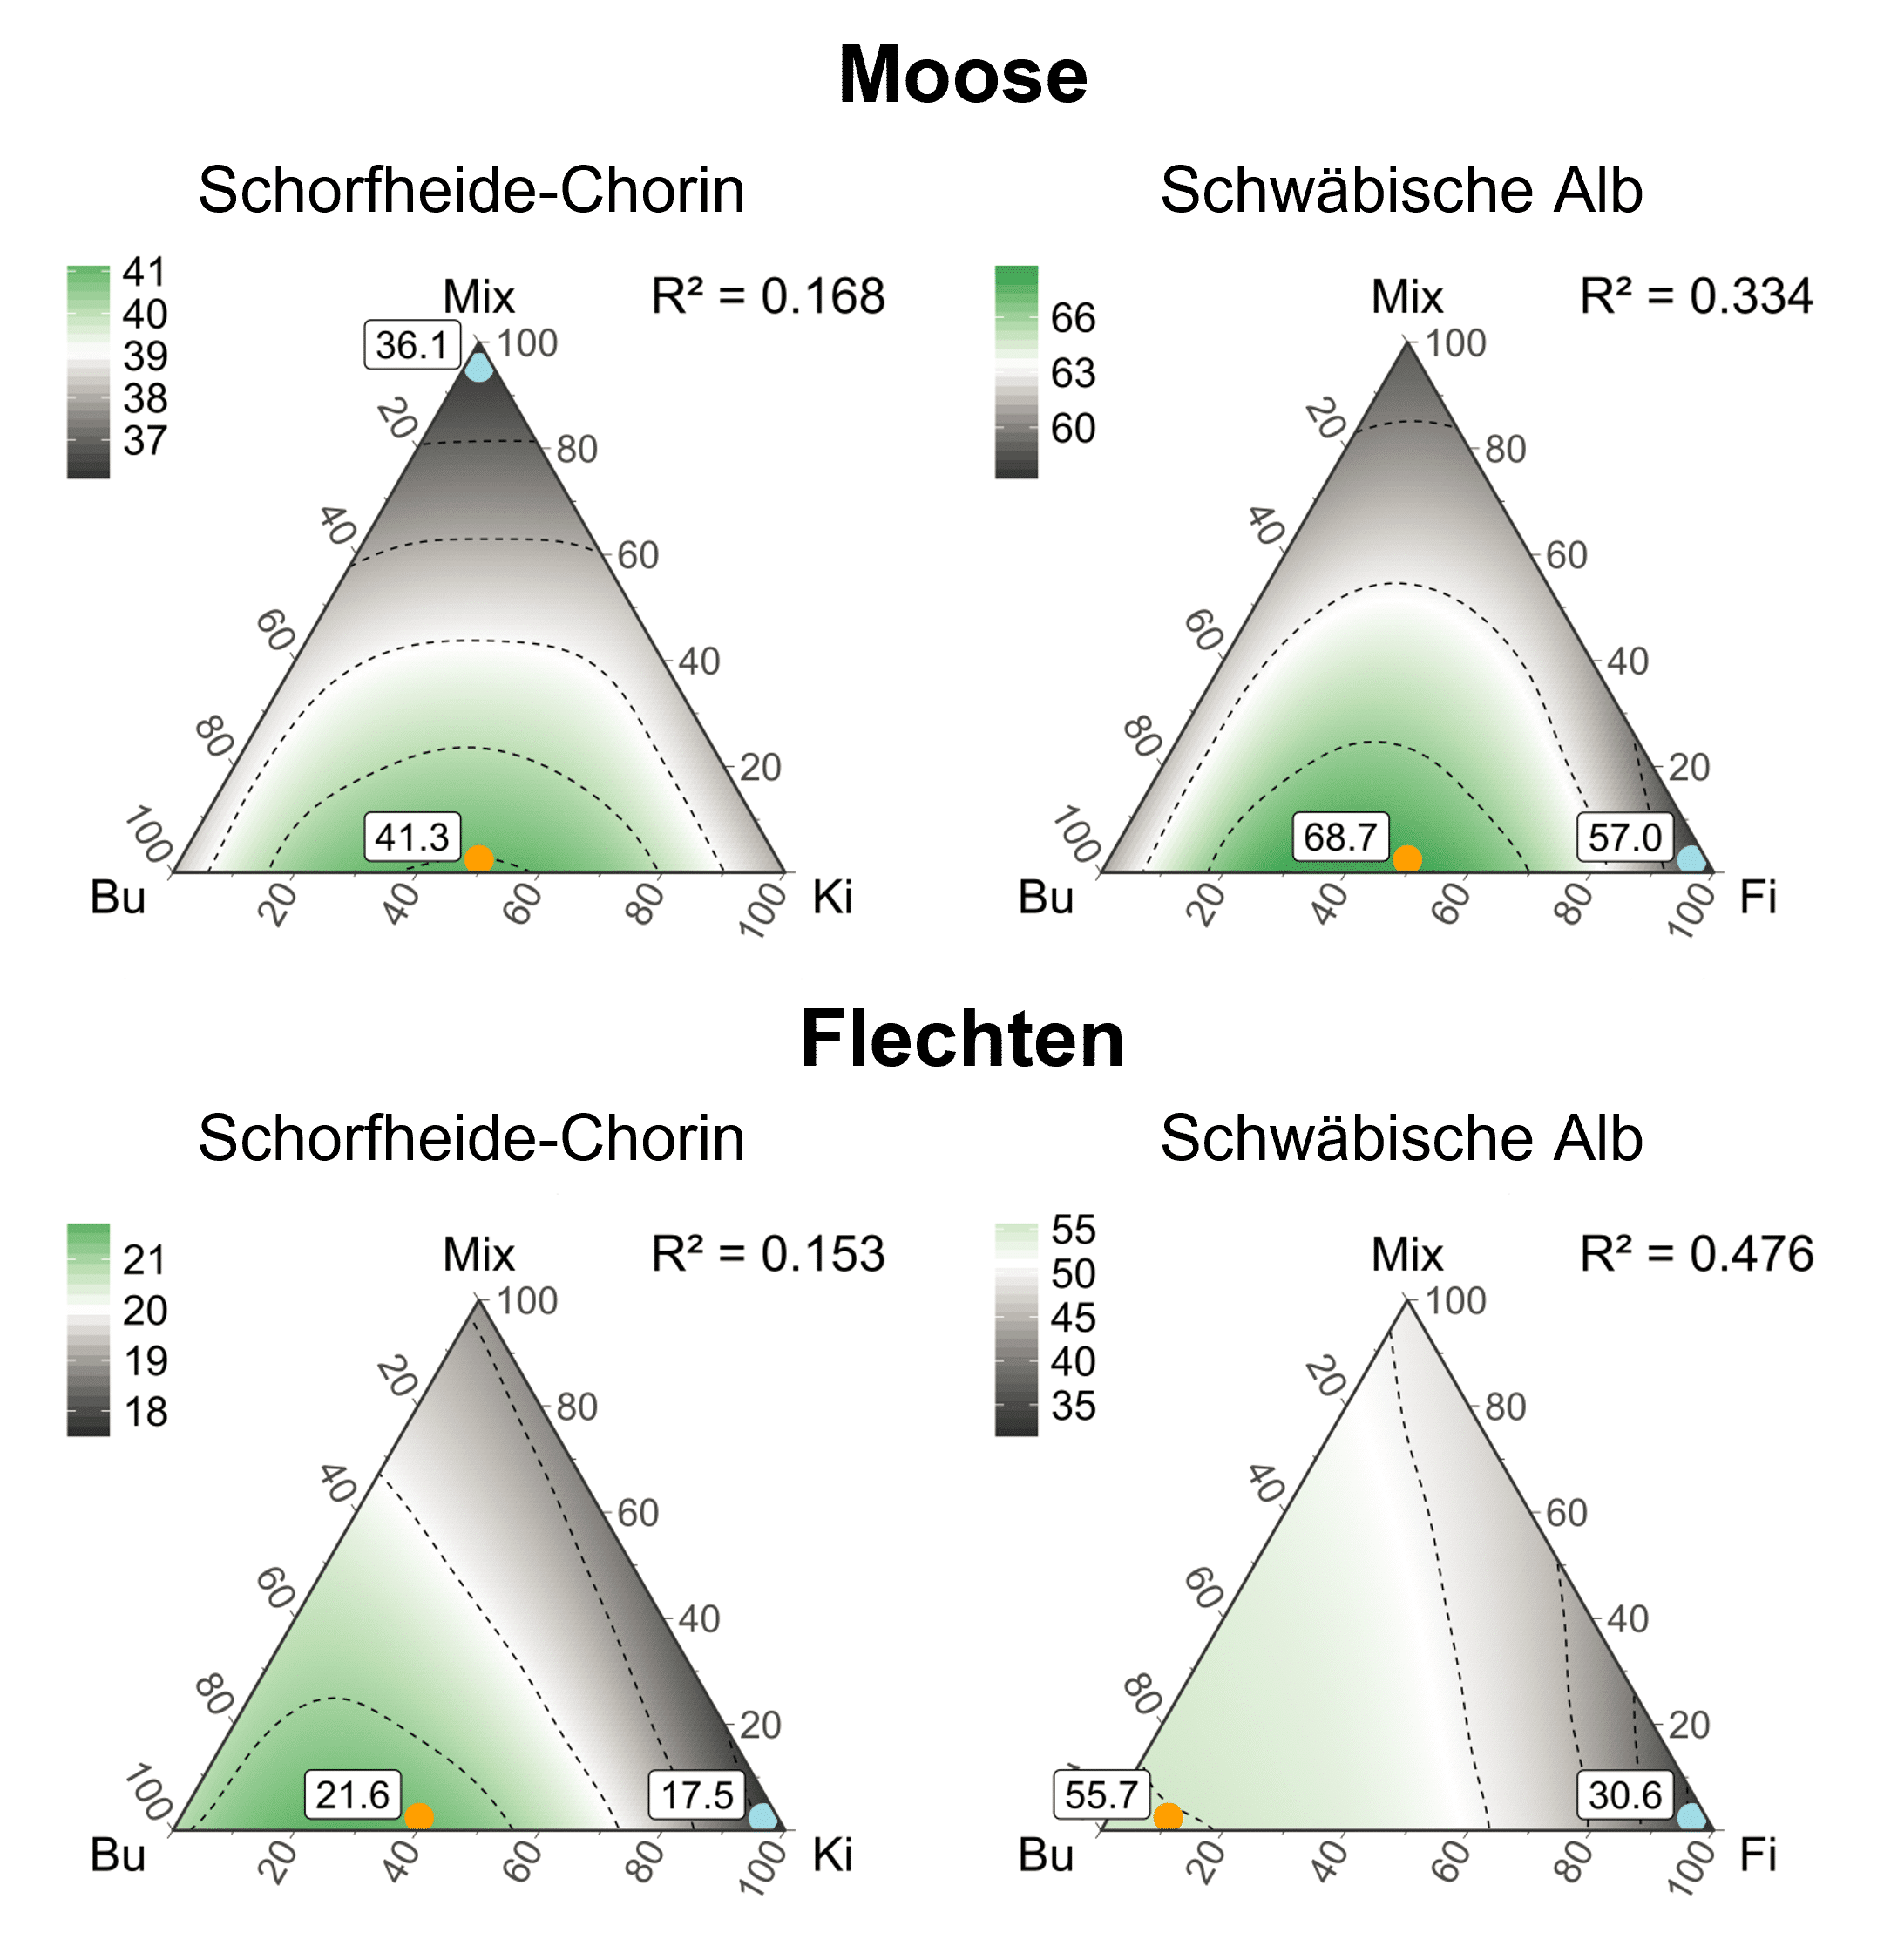 Abbildung: Das Schaubild zeigt vier Diagramme zur Gesamtartenvielfalt von Moosen und Flechten in unterschiedlich zusammengesetzten Waldlandschaften aus Rein- und Mischbeständen in den Gebieten Schorfheide-Chorin und Schwäbische Alb.